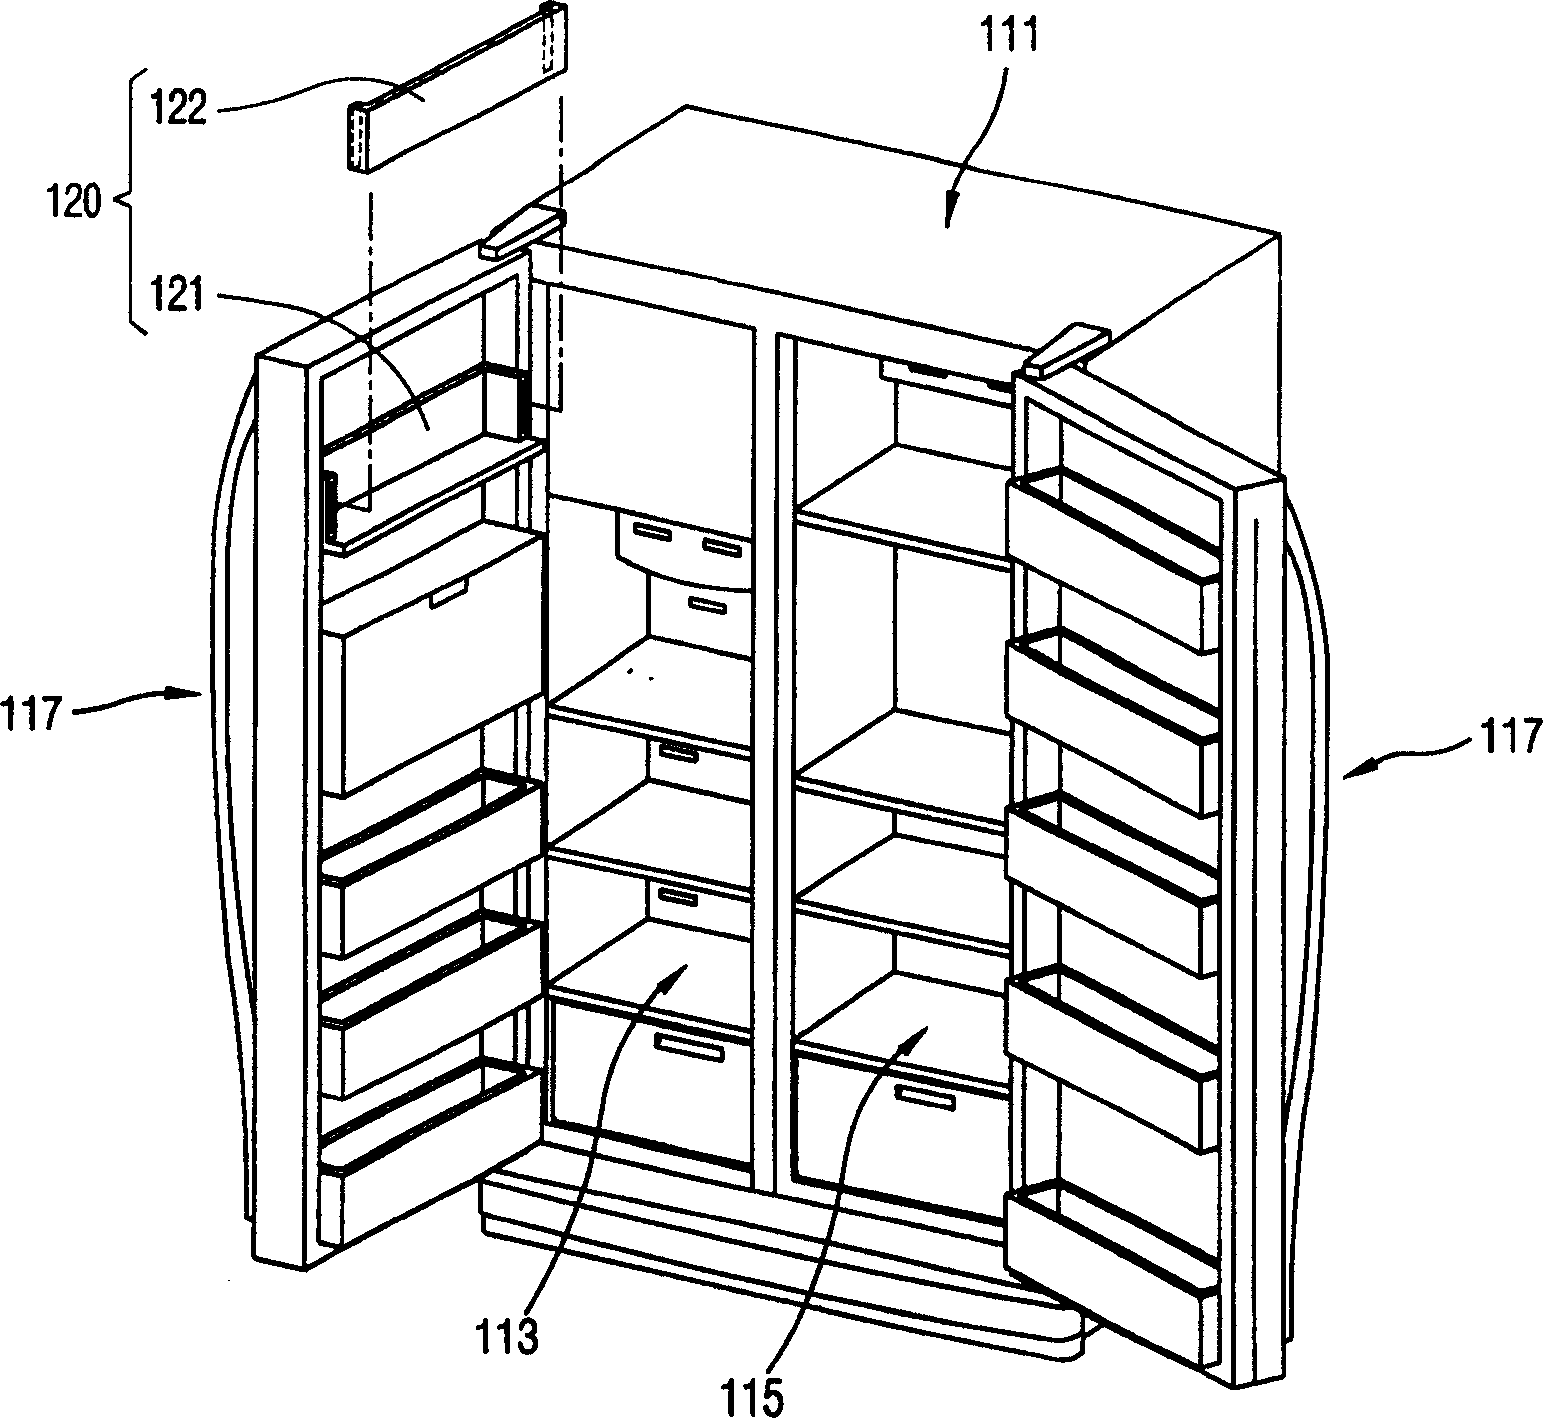 Refrigerator with adjustable storing basket